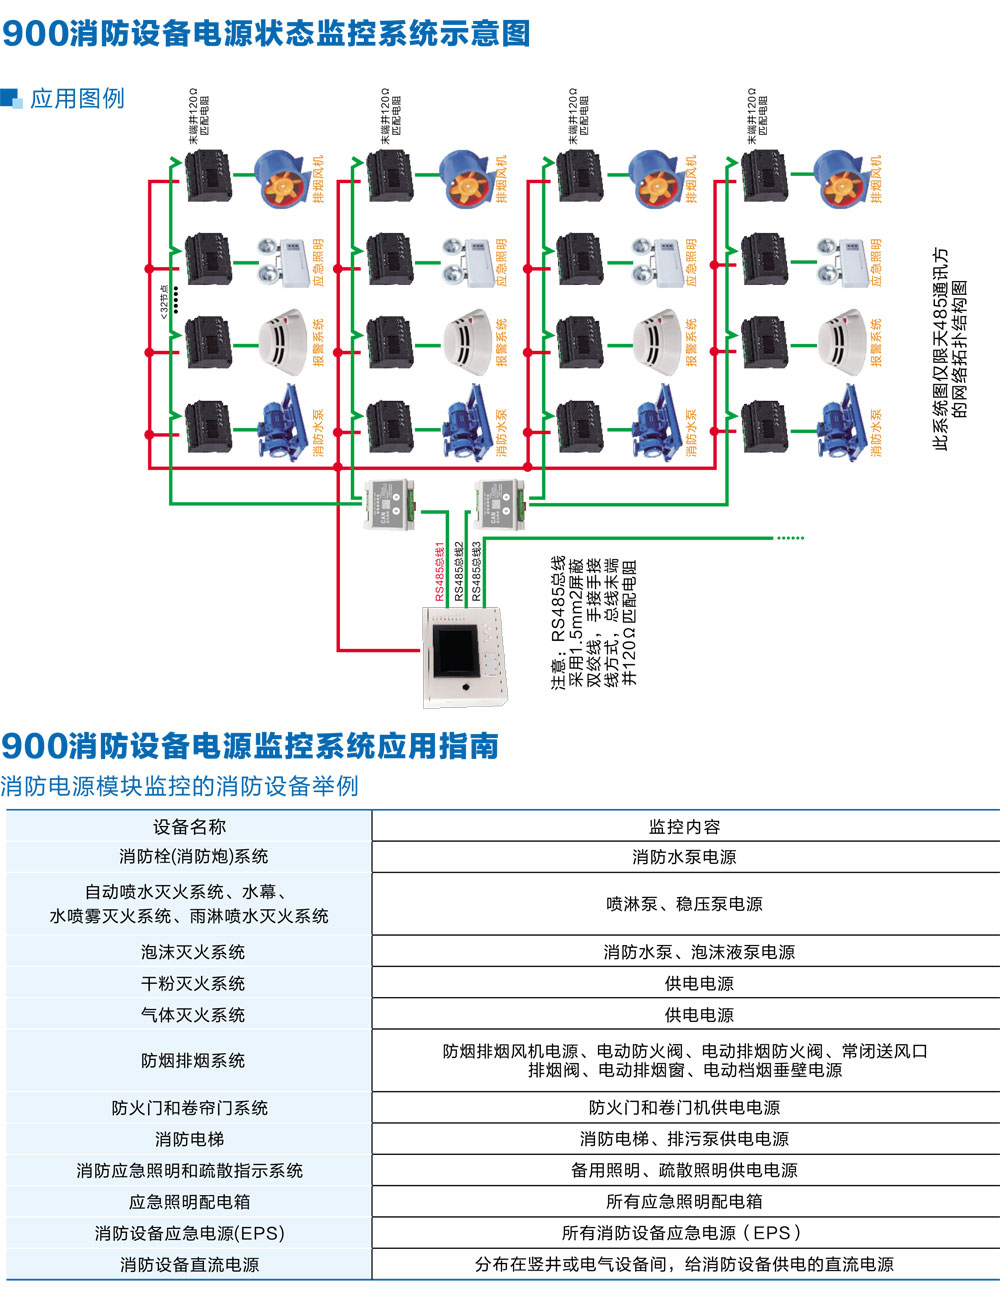 HXDZ-900消防设备电源监控系统详情3.jpg